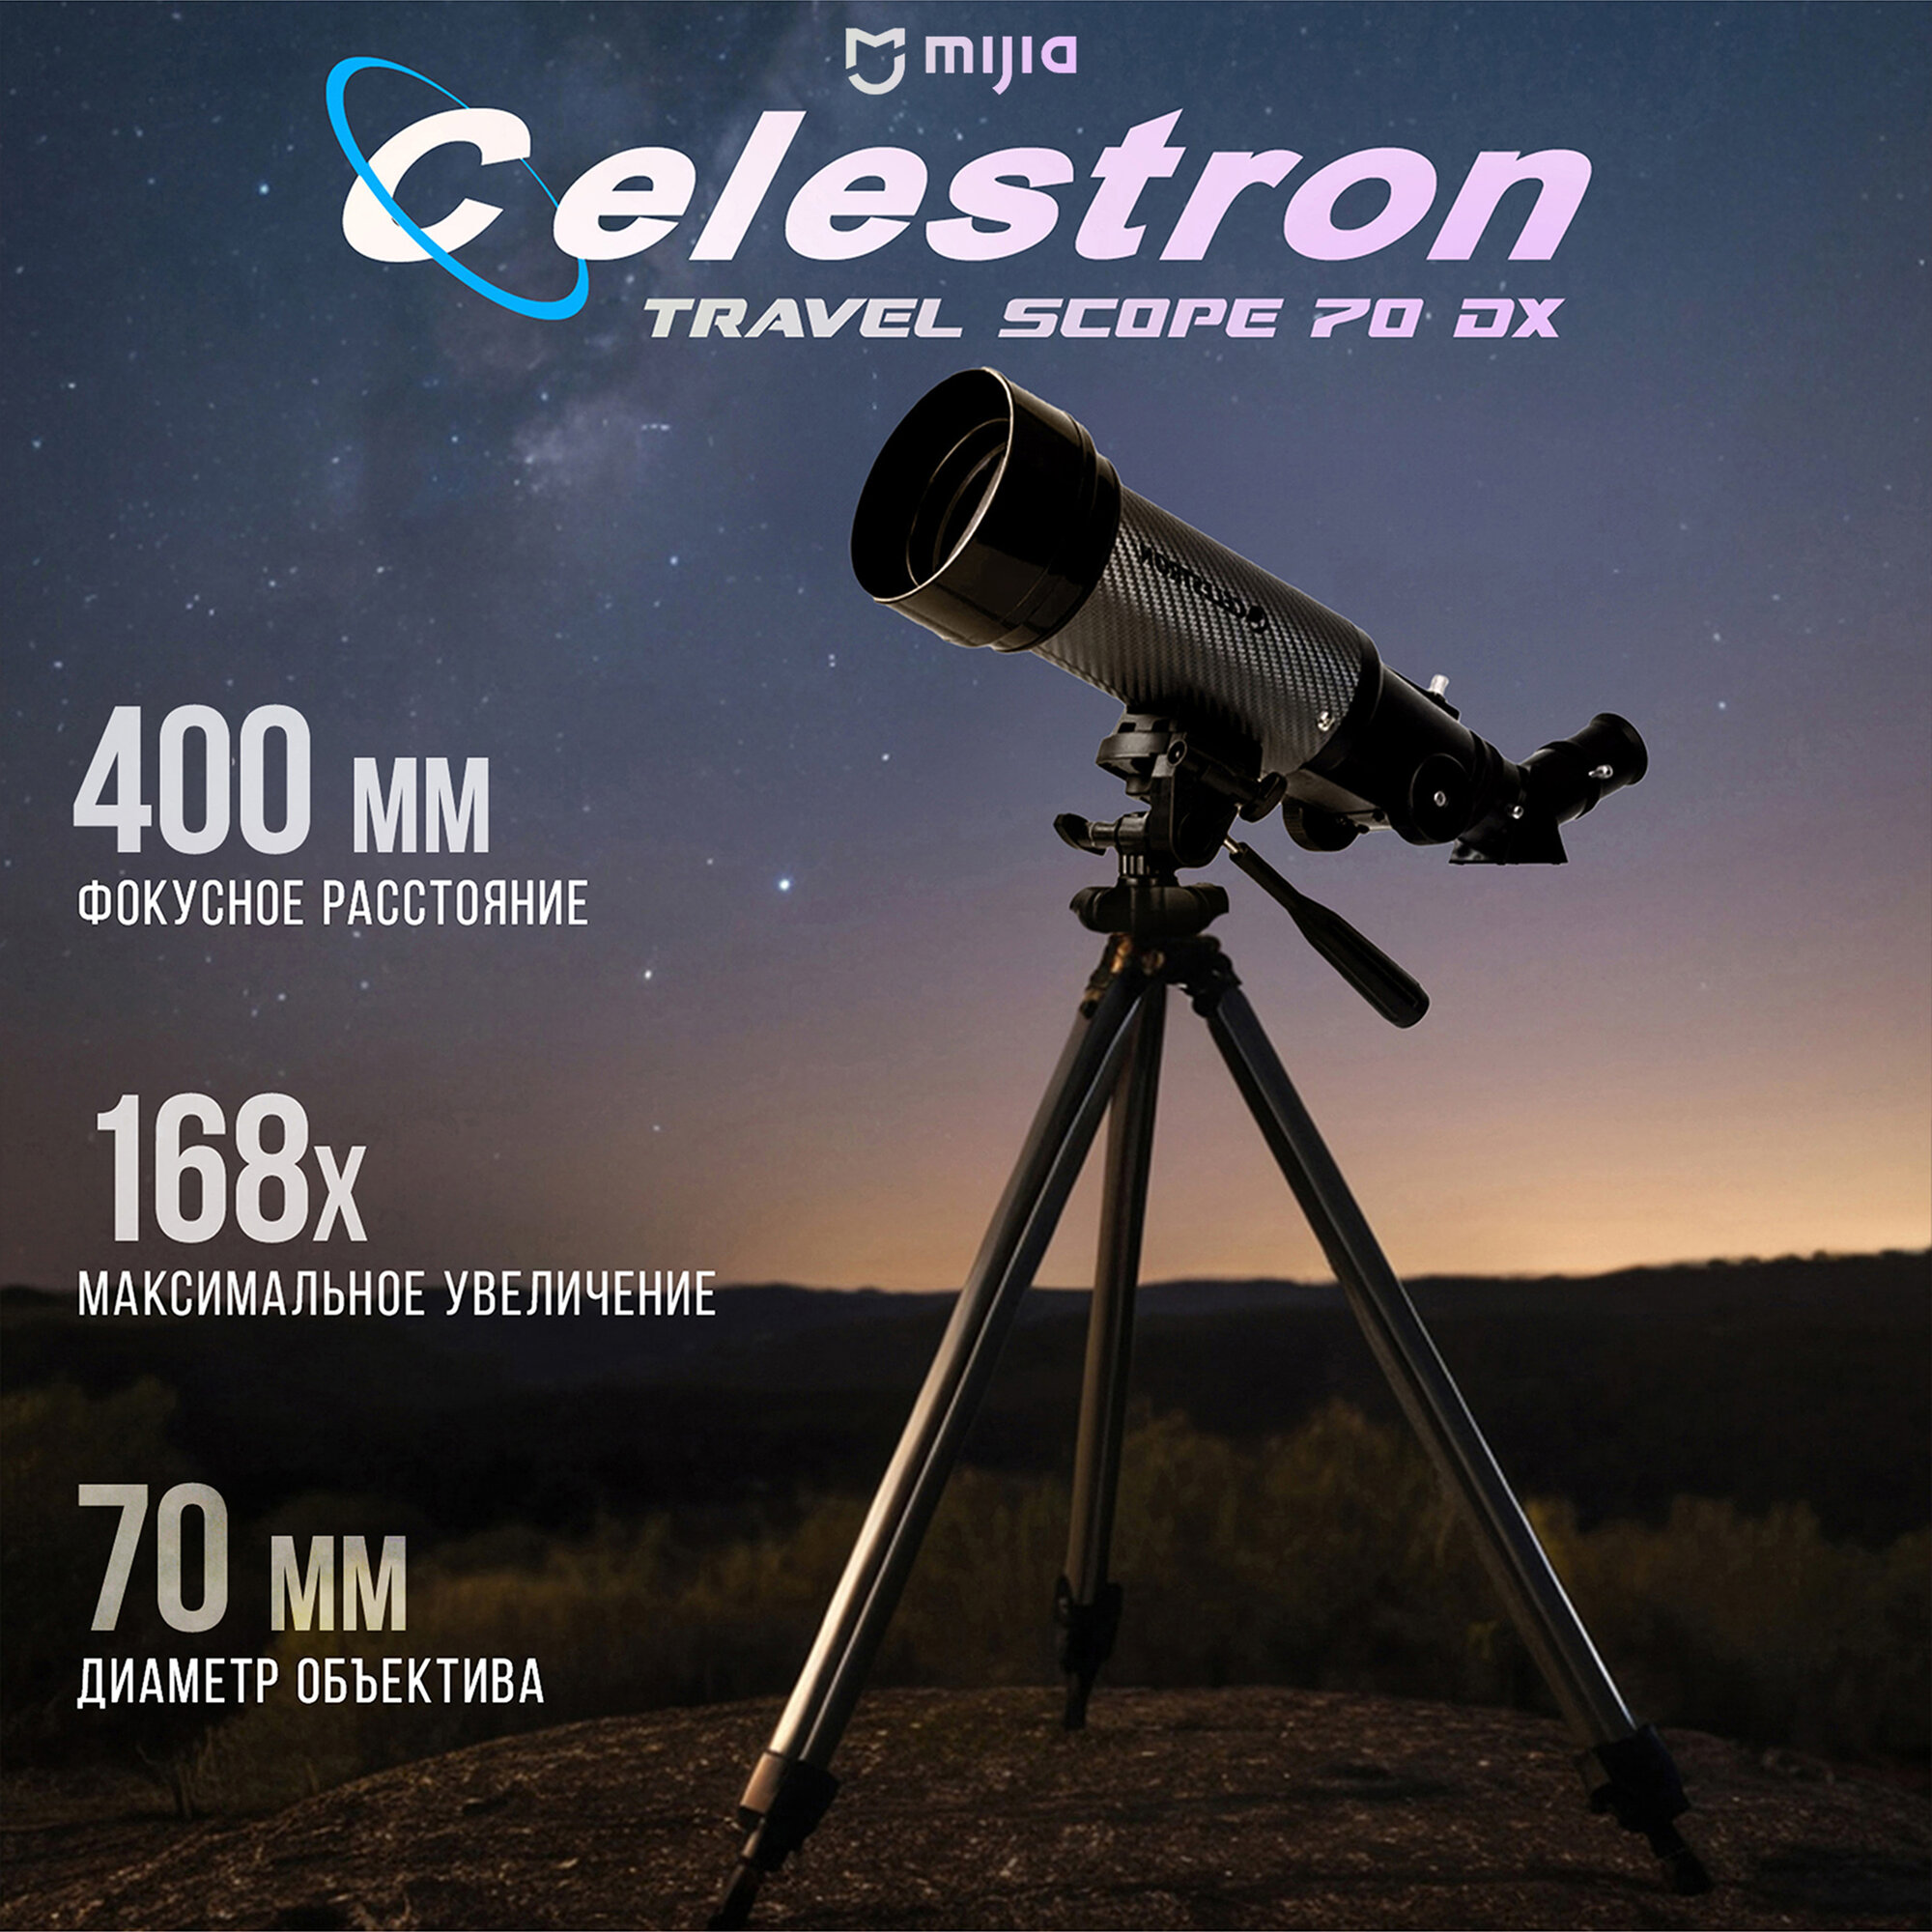 Телескоп Celestron Travel Scope 70 DX - 22035